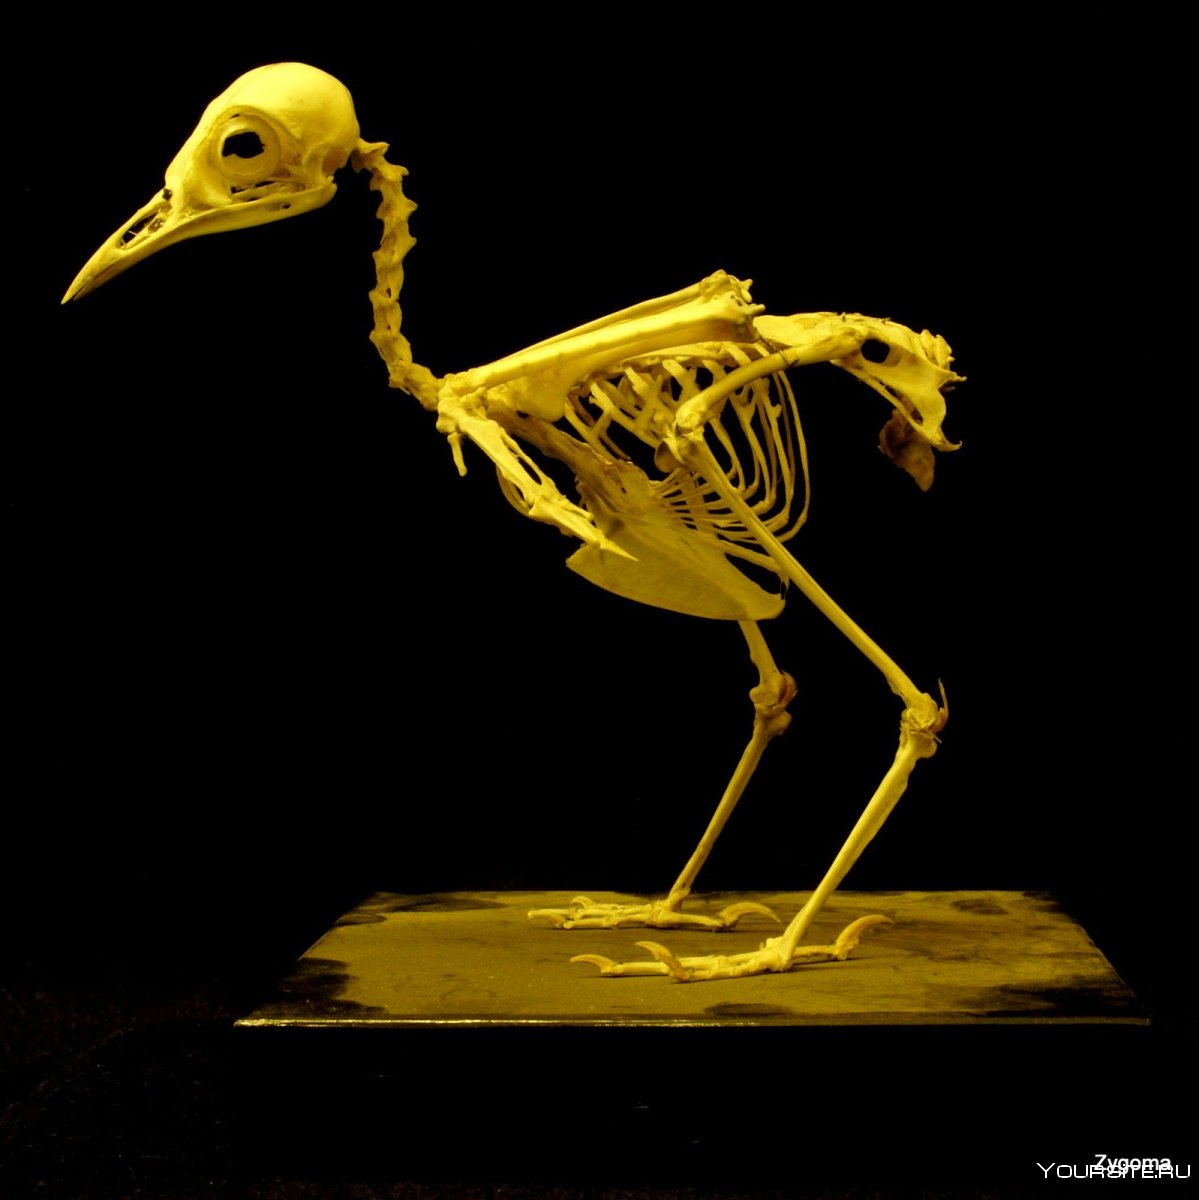 Скелет птицы